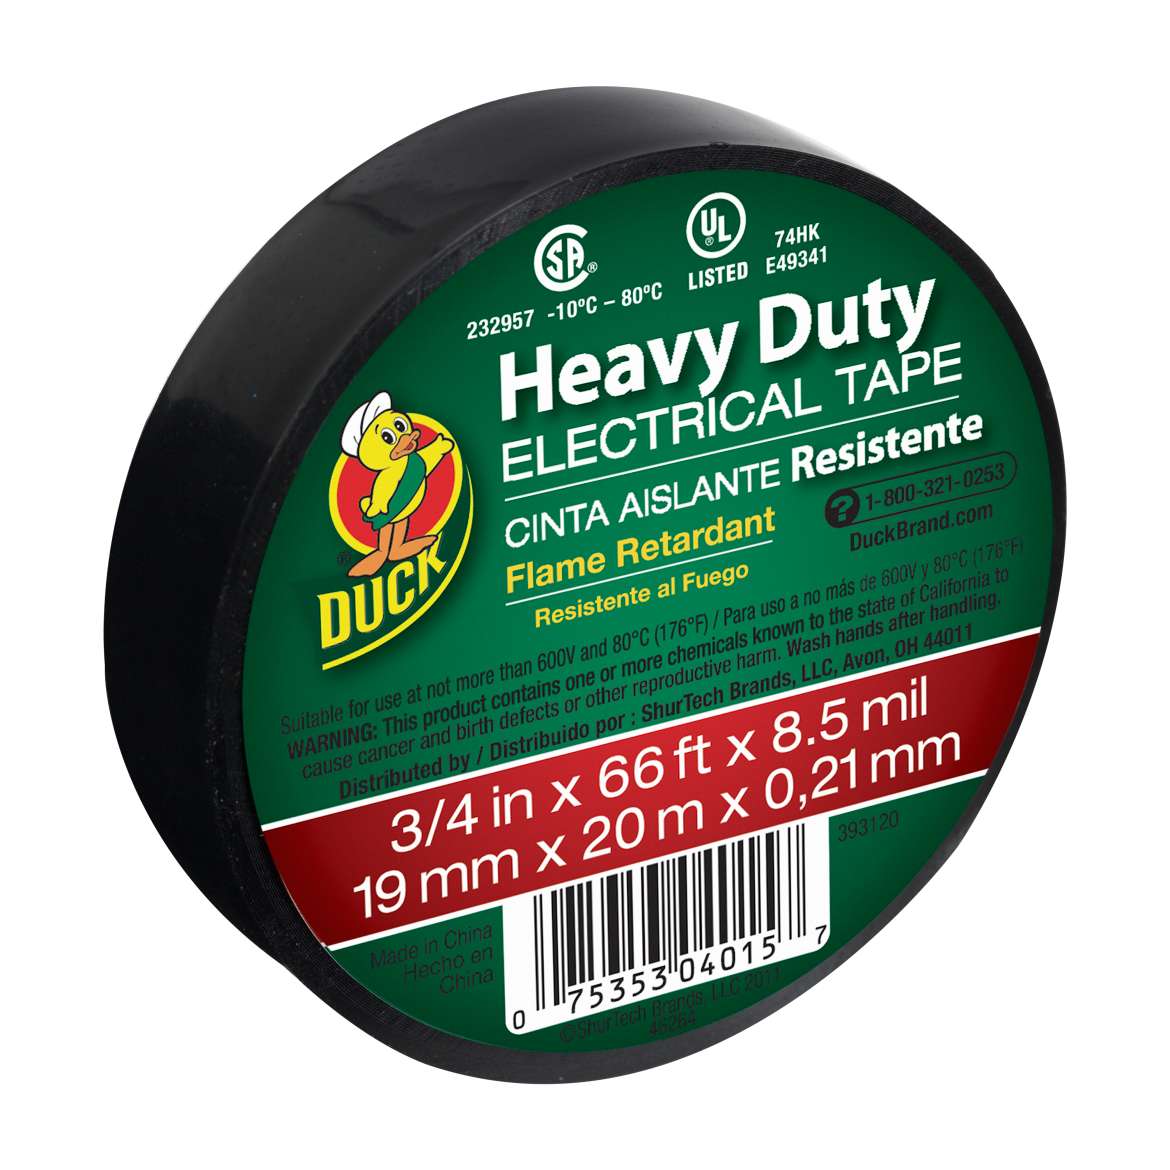 Heavy Duty Electrical Tape